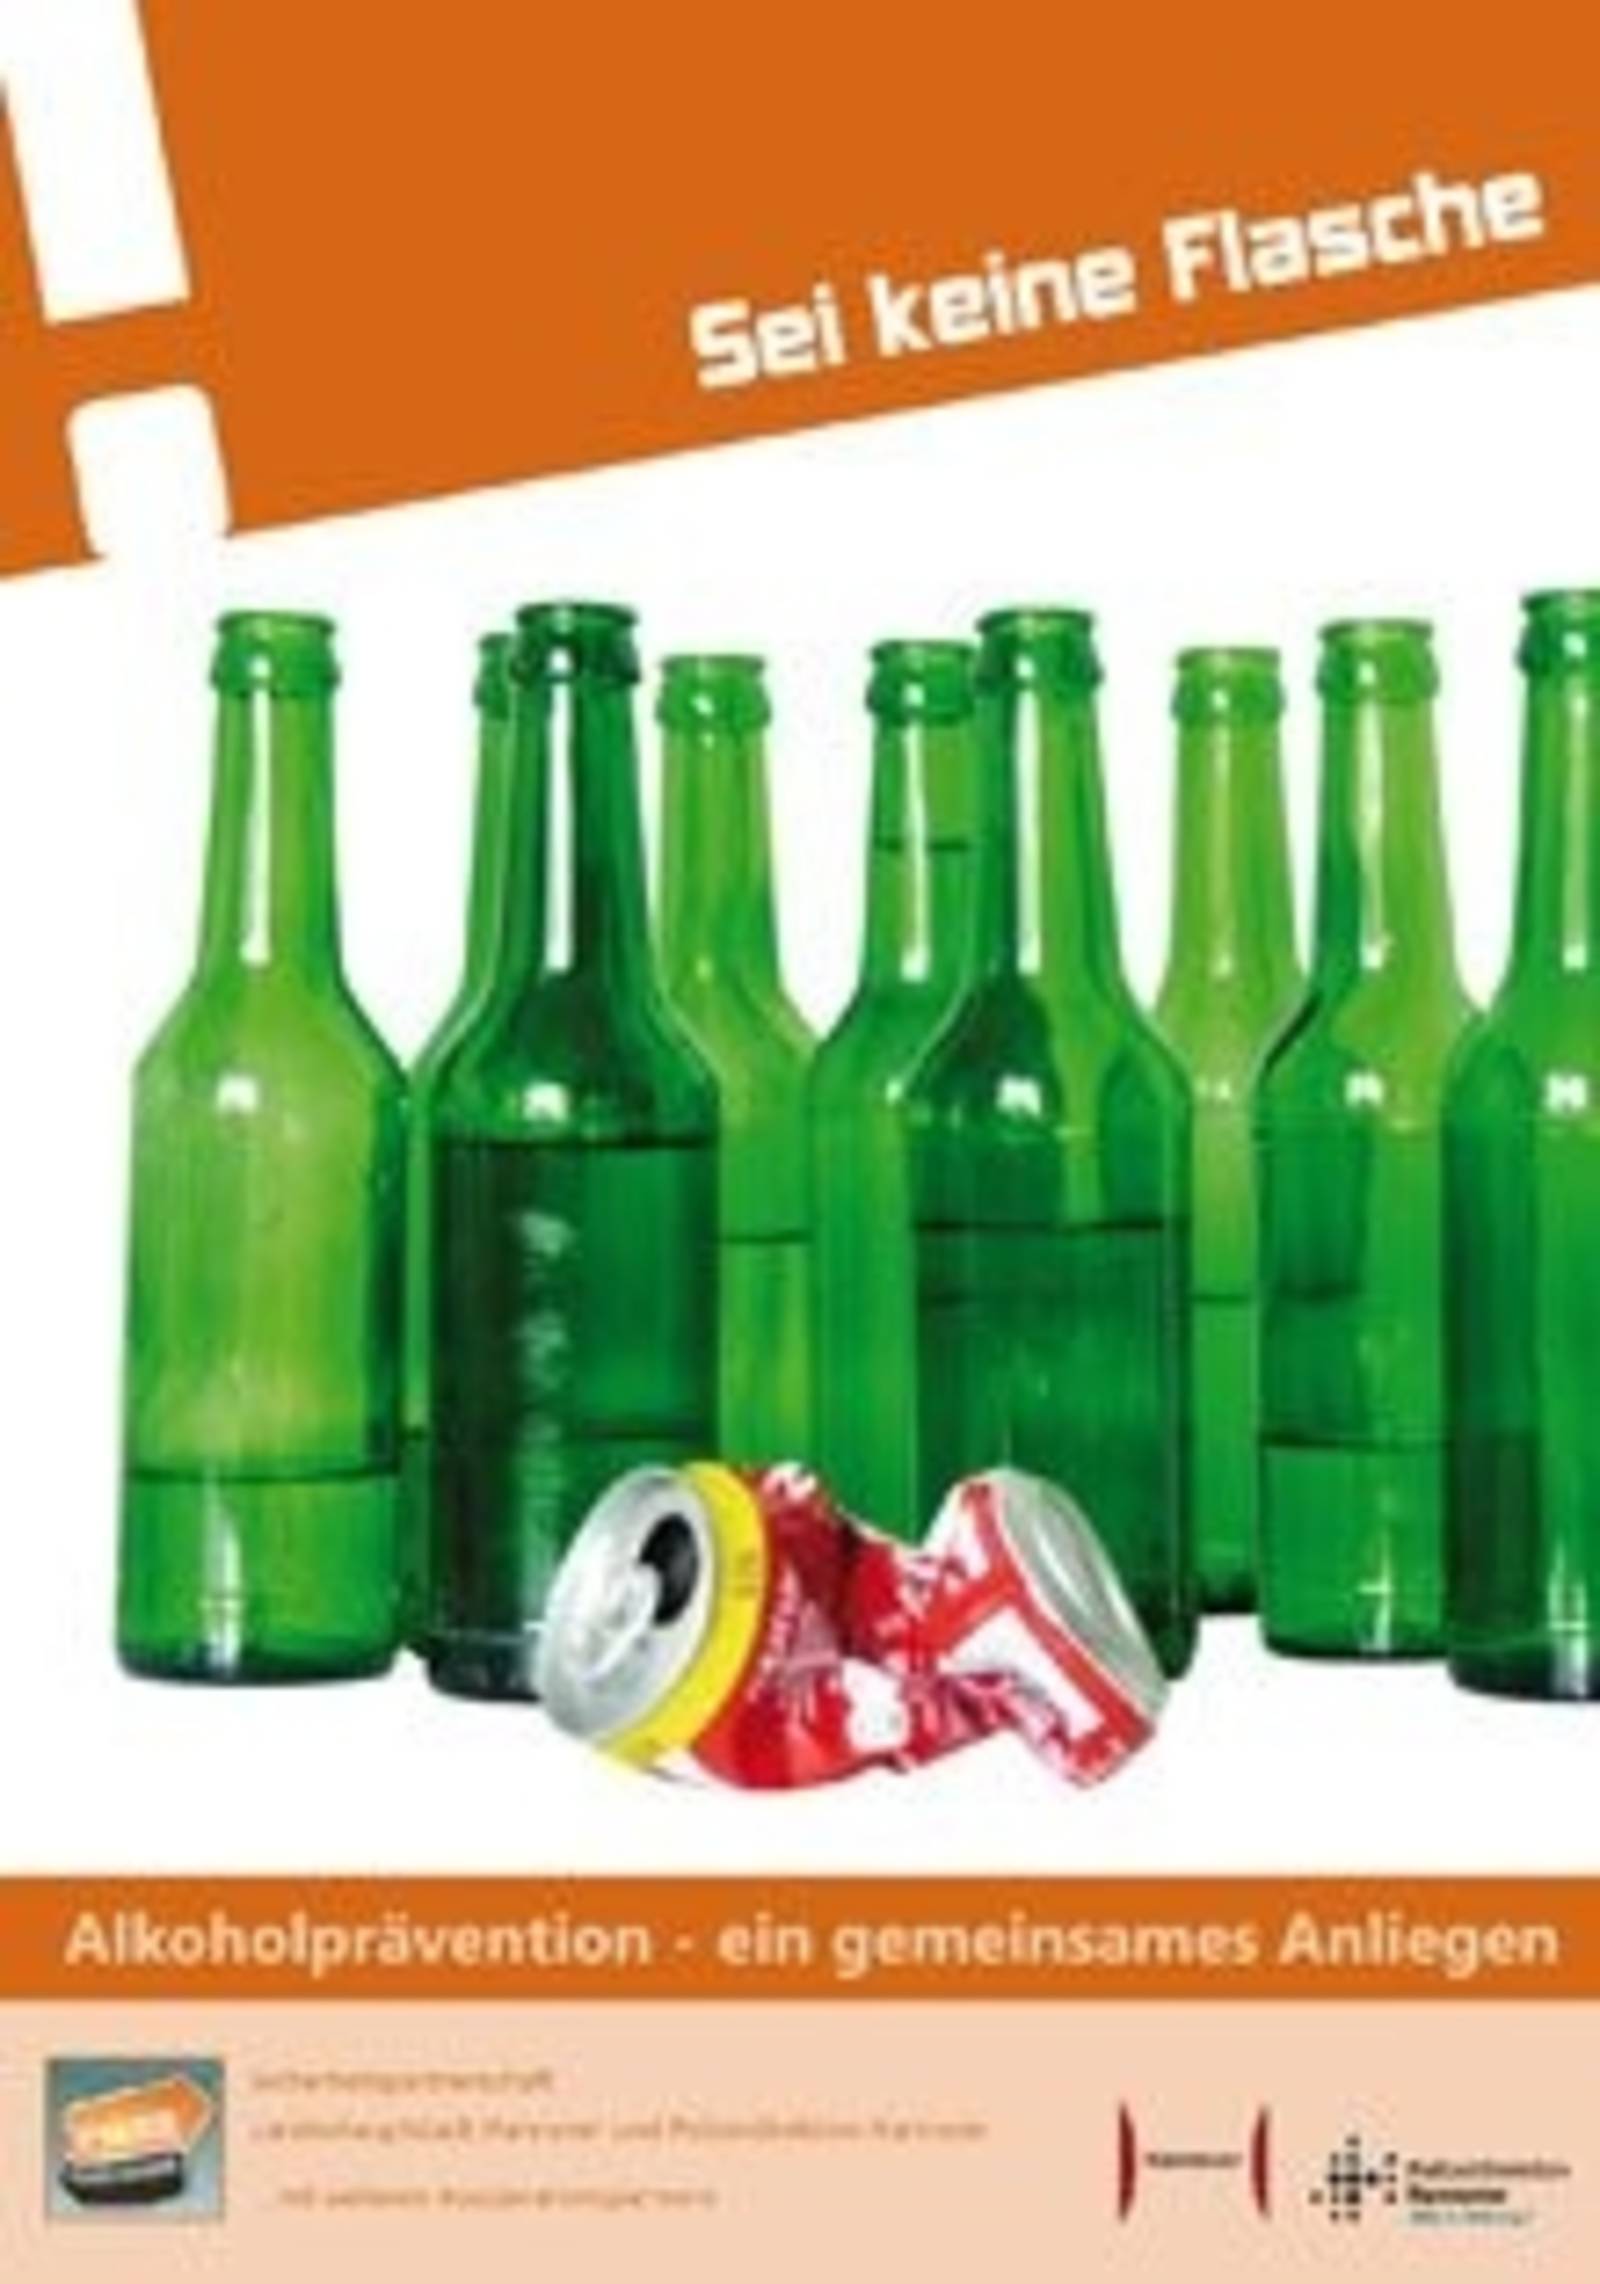 Plakat "Sei keine Flasche" für Alkoholprävention